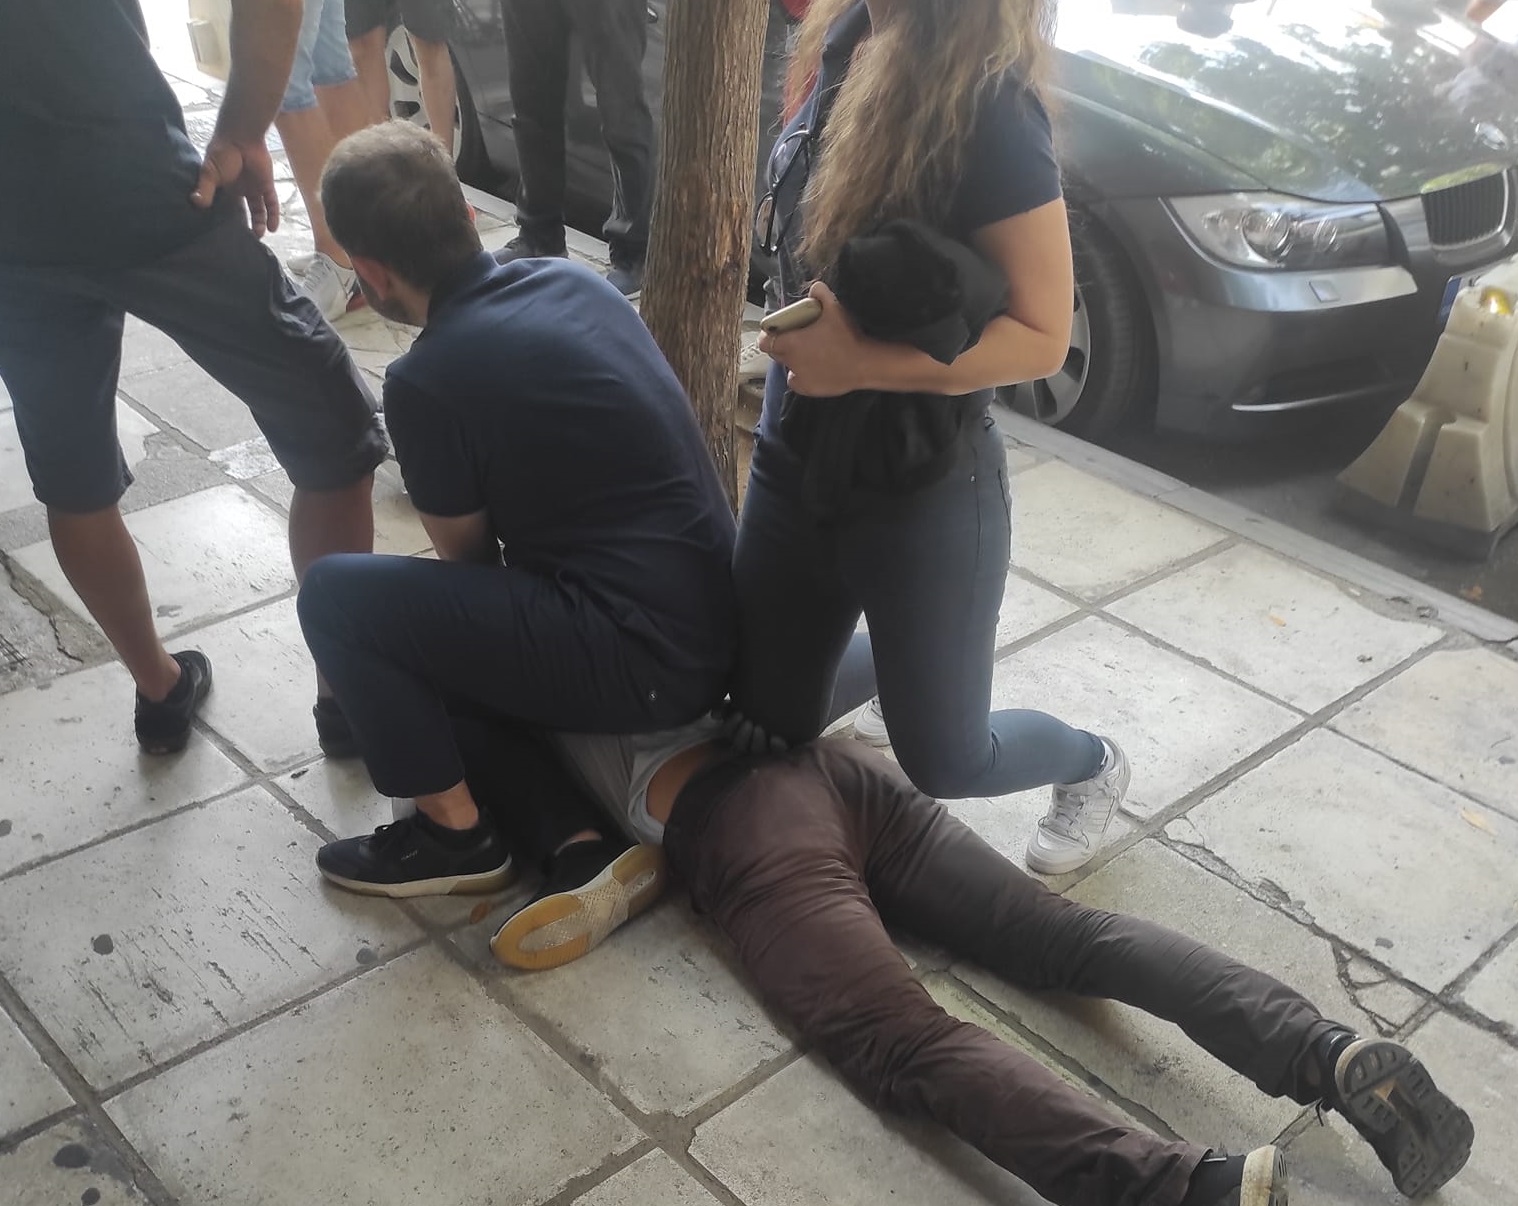 Θεσσαλονίκη: Πολίτες έπιασαν διαρρήκτη που πήγε να τρυπώσει μέρα μεσημέρι σε χρυσοχοείο (φωτο)